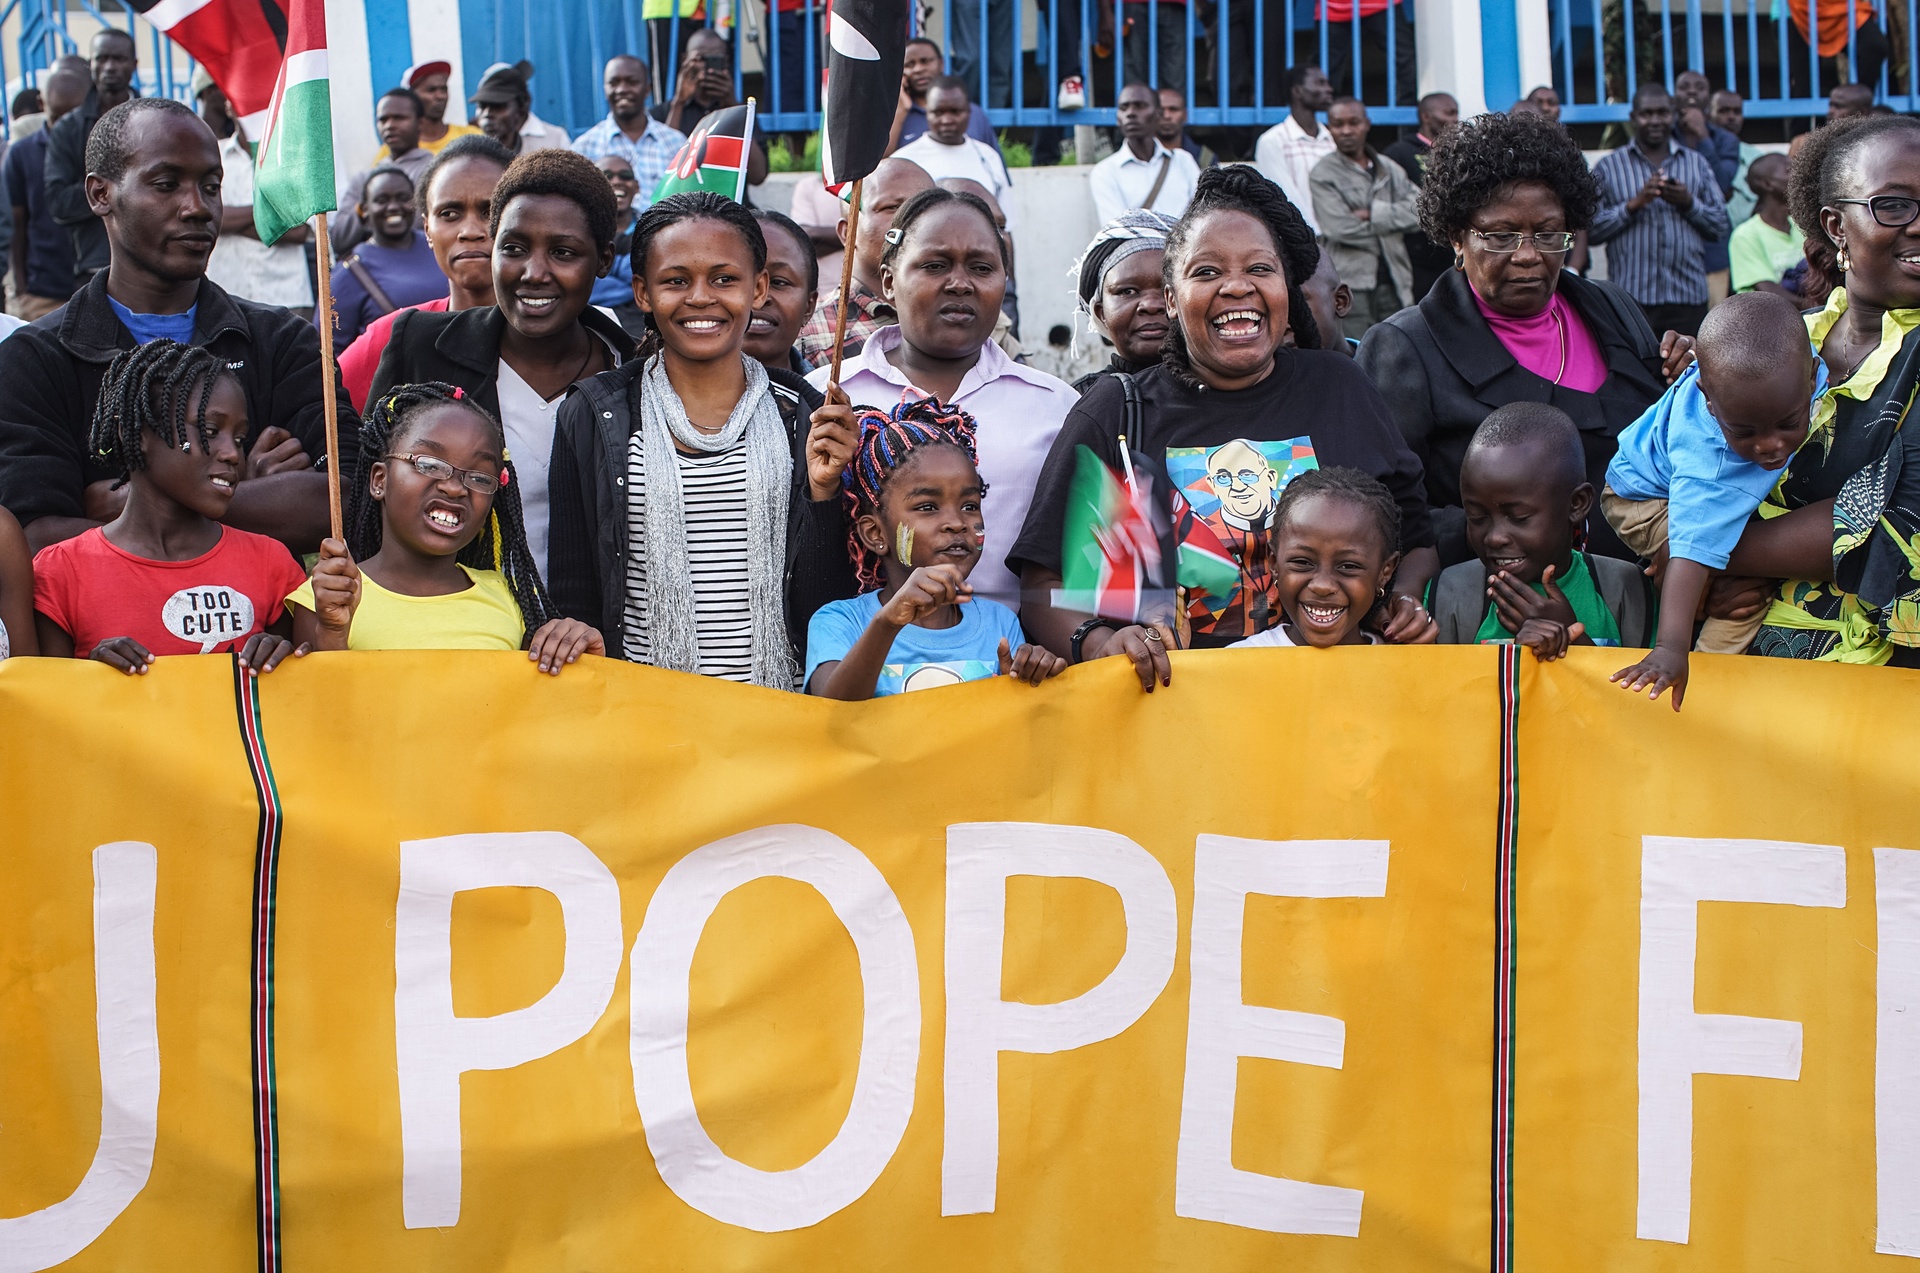 L'arrivo di papa Francesco in Kenya